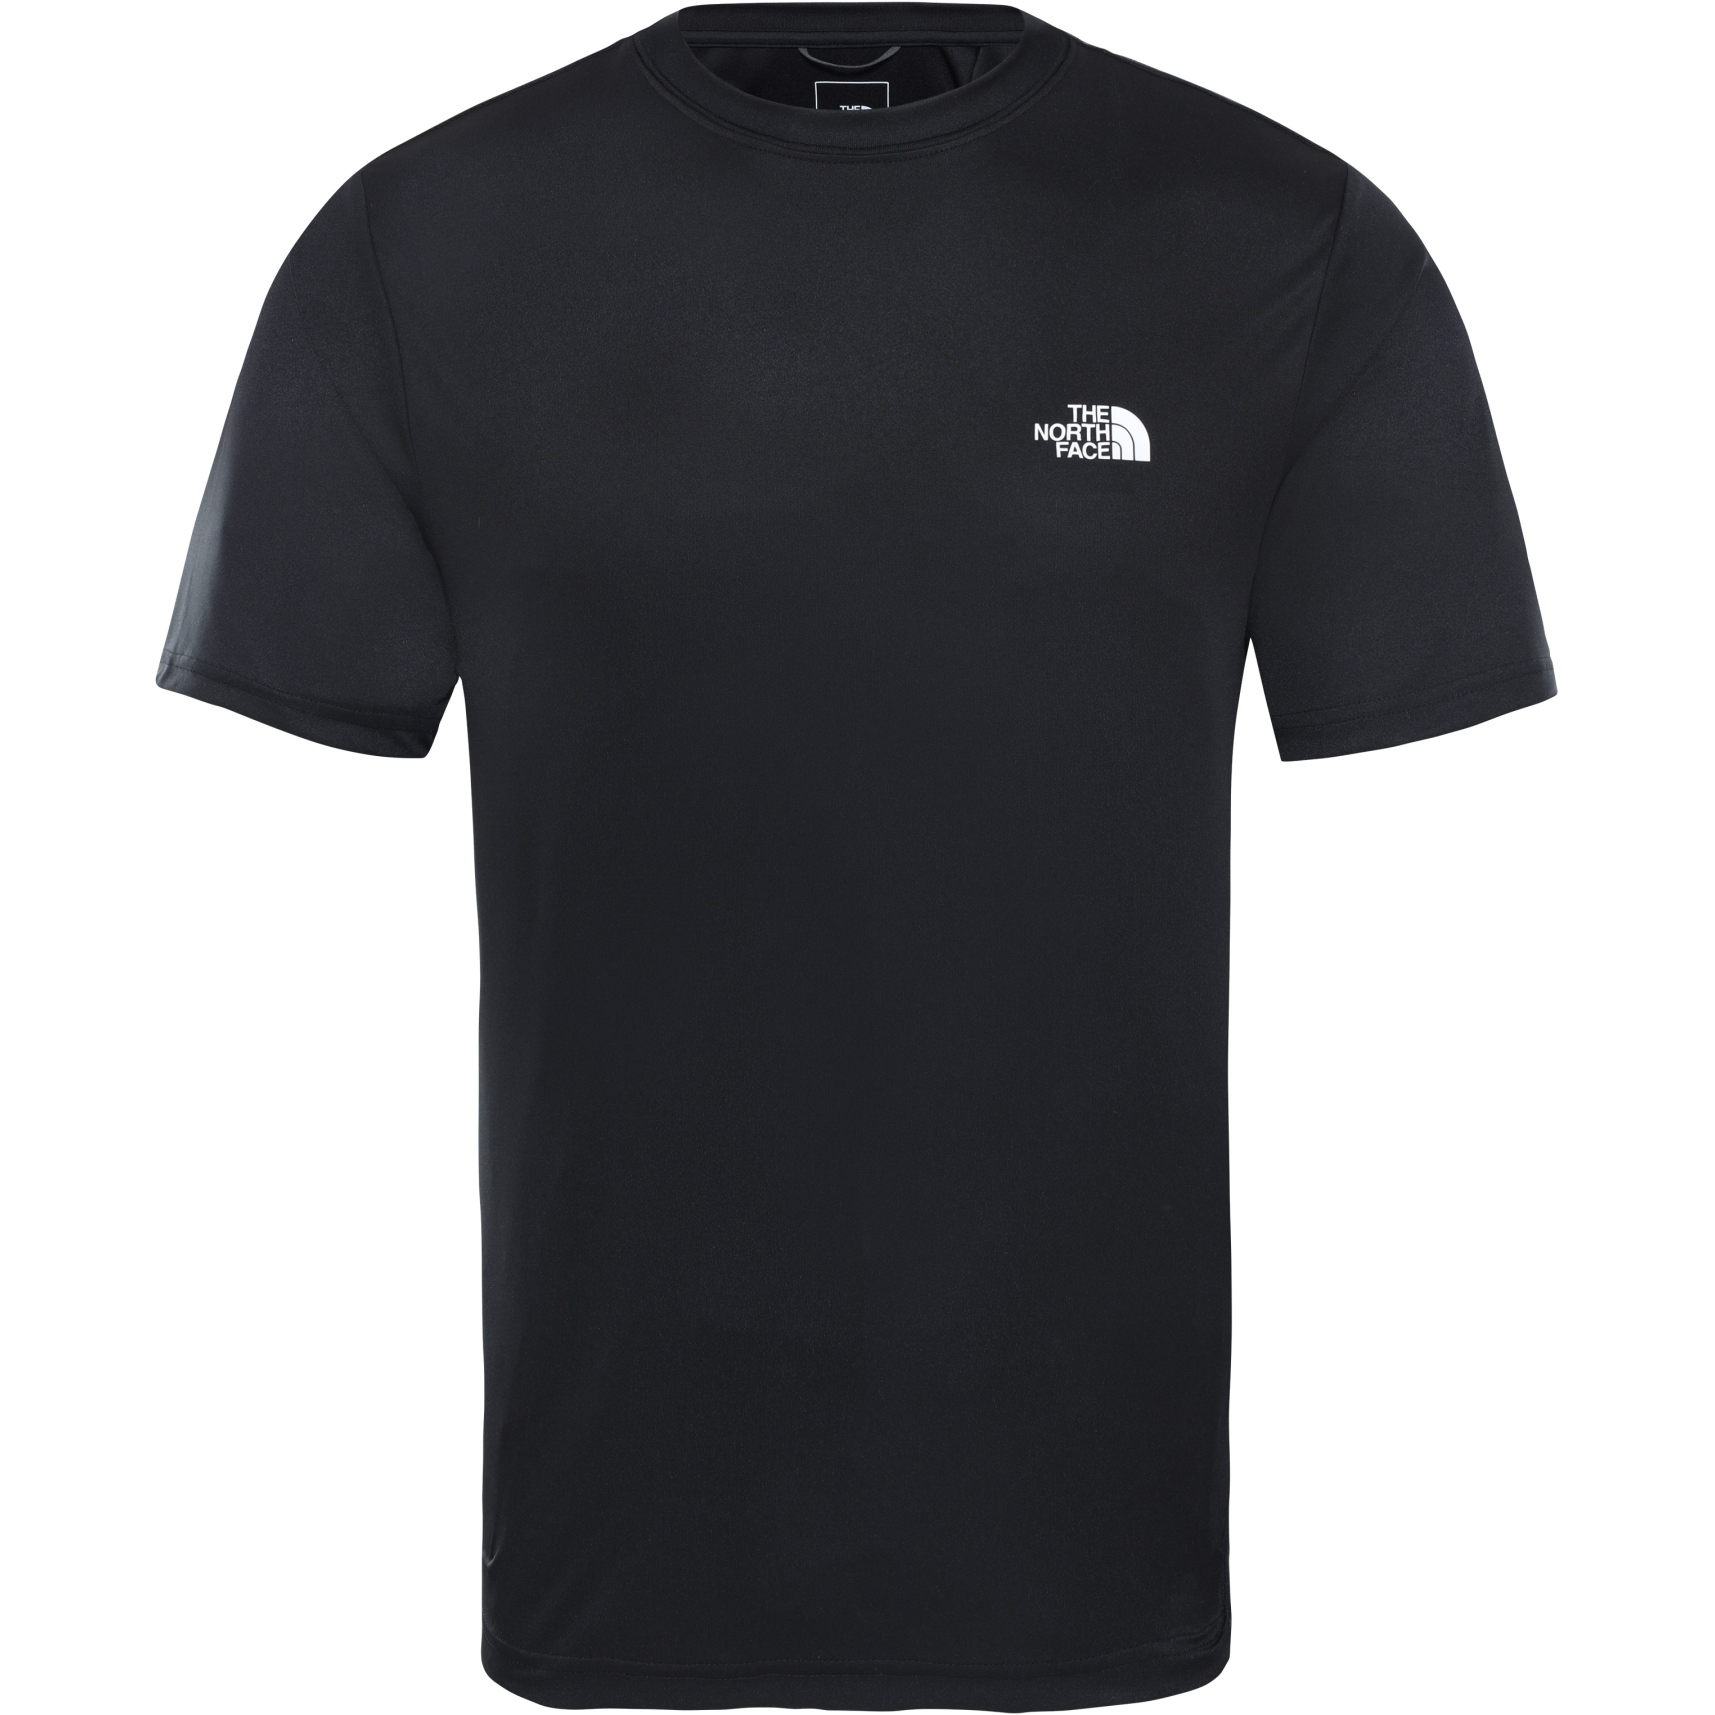 Produktbild von The North Face Reaxion Amp T-Shirt Herren - TNF Black